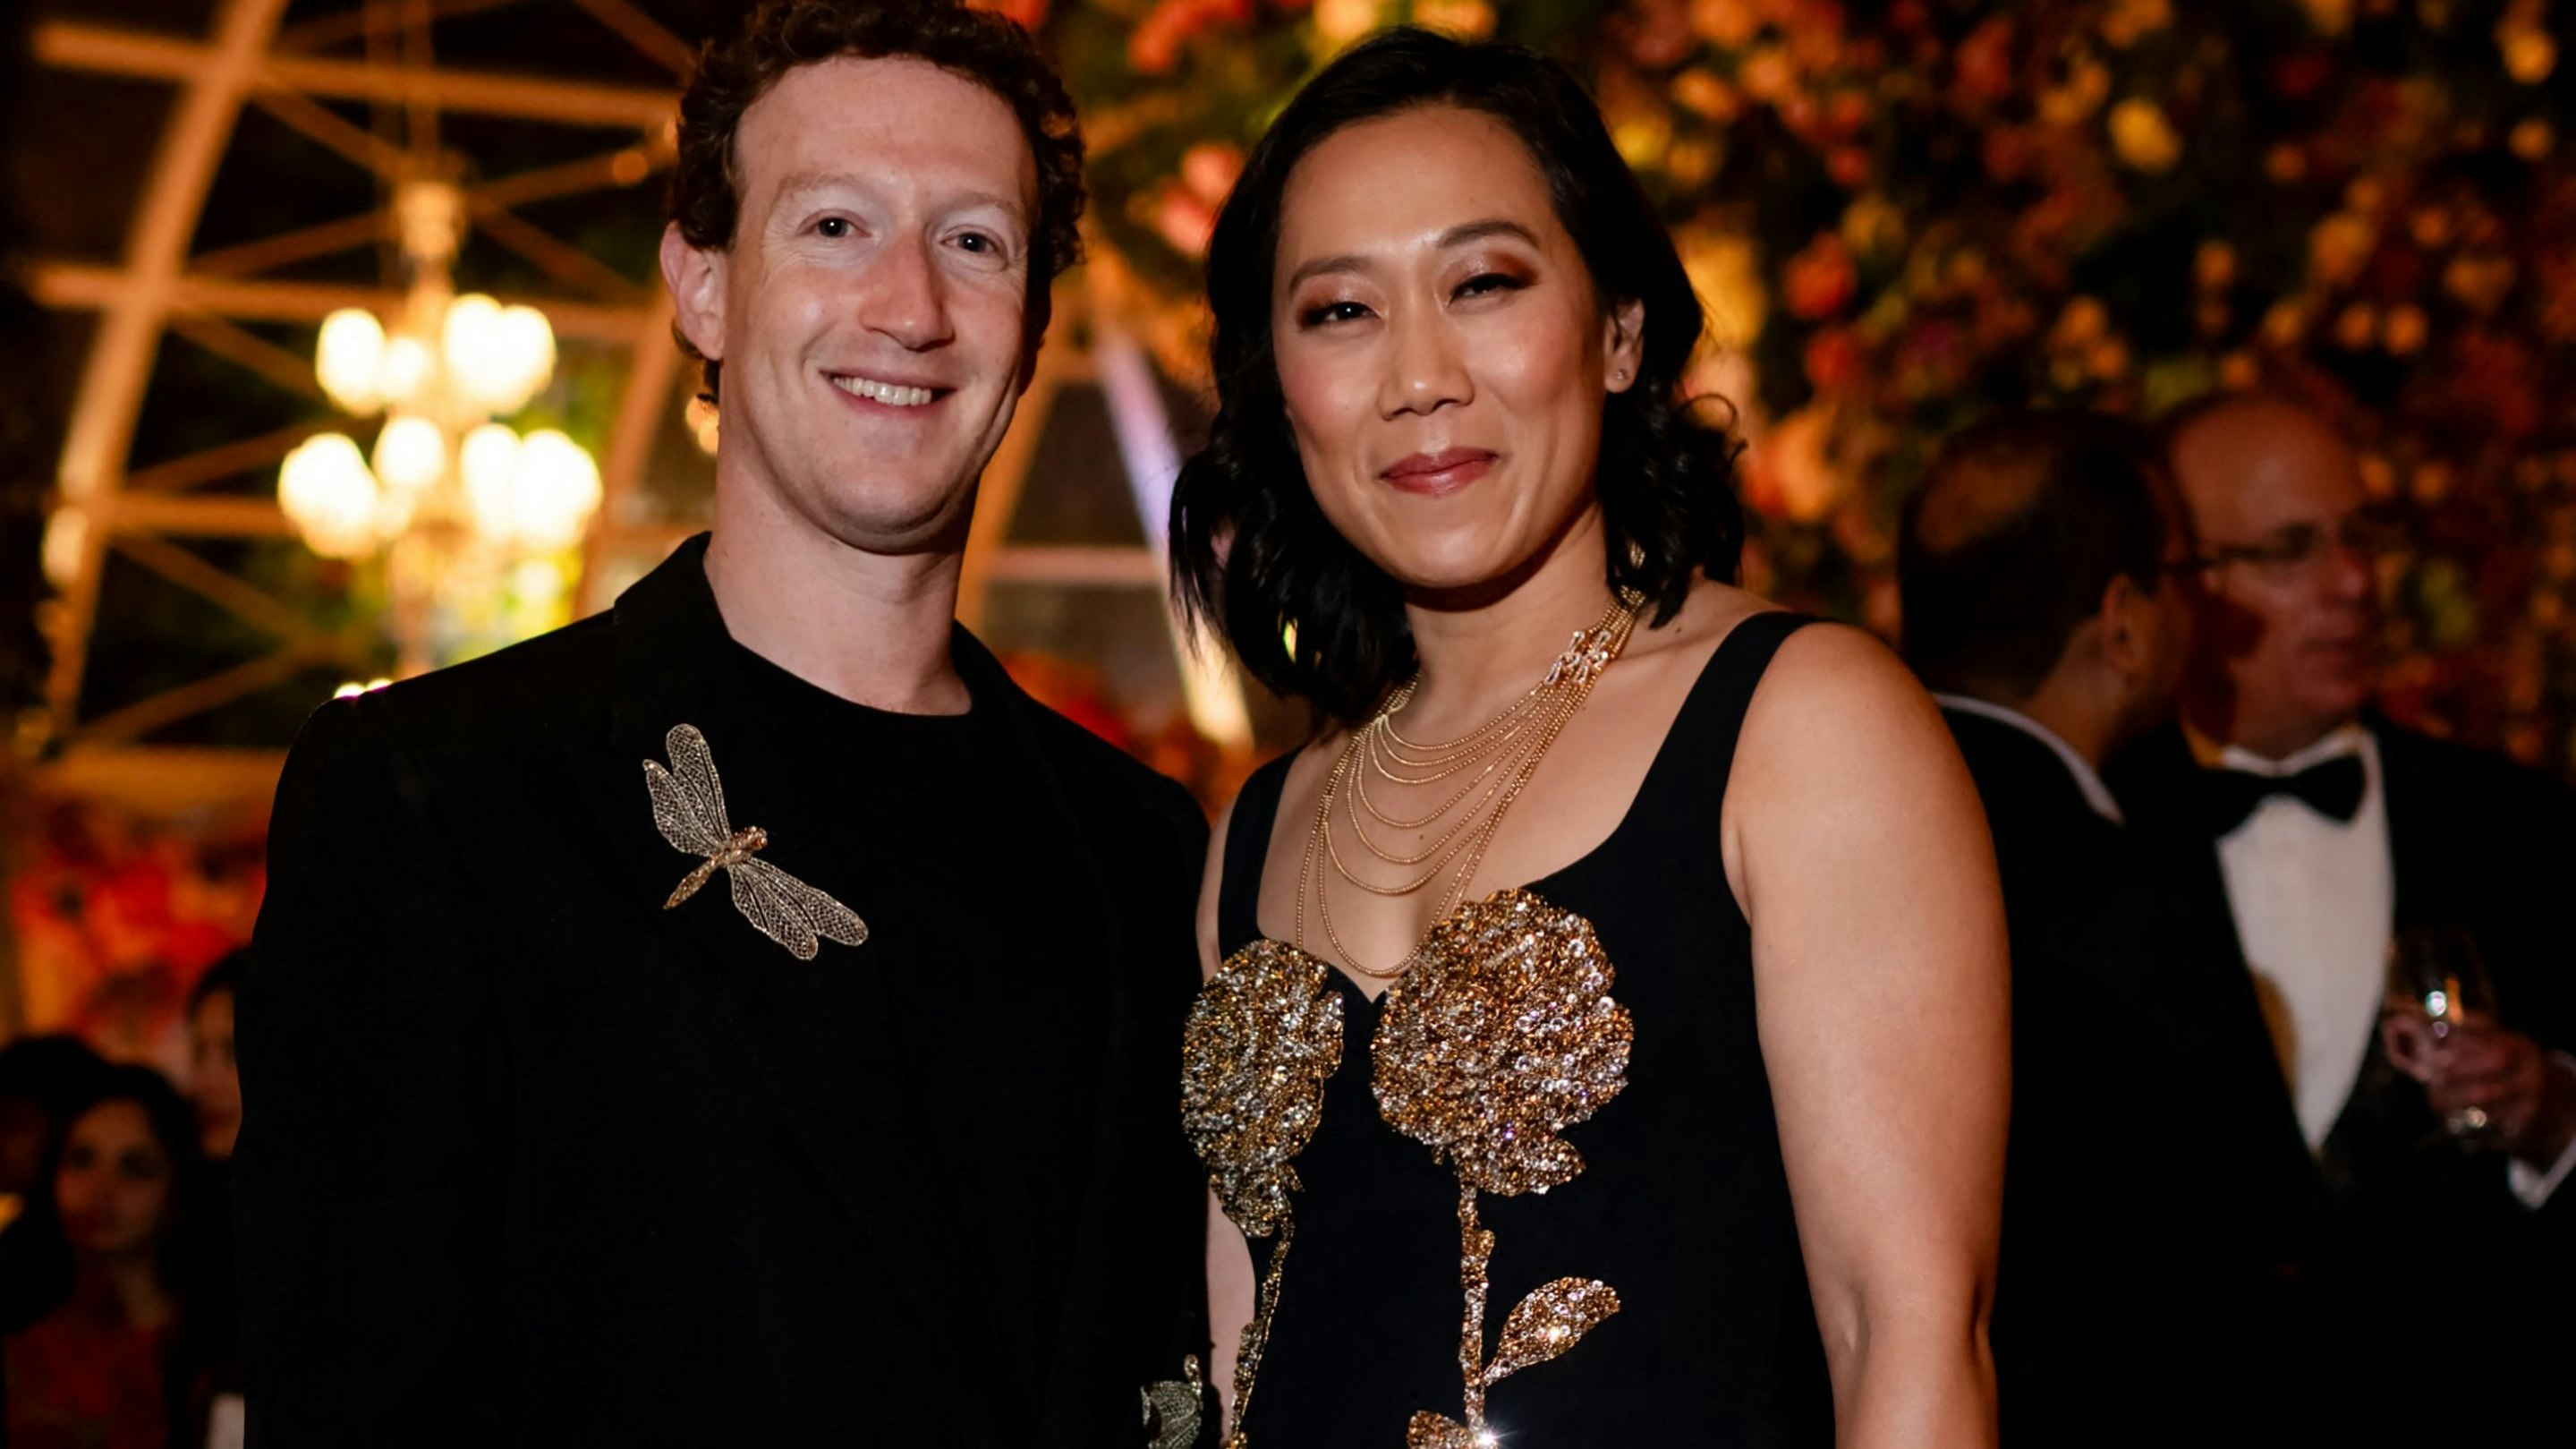 Meta-Chef Mark Zuckerberg mit seiner Ehefrau Priscilla Chan auf der Vorhochzeitsfeier von Milliardär Mukesh Ambani